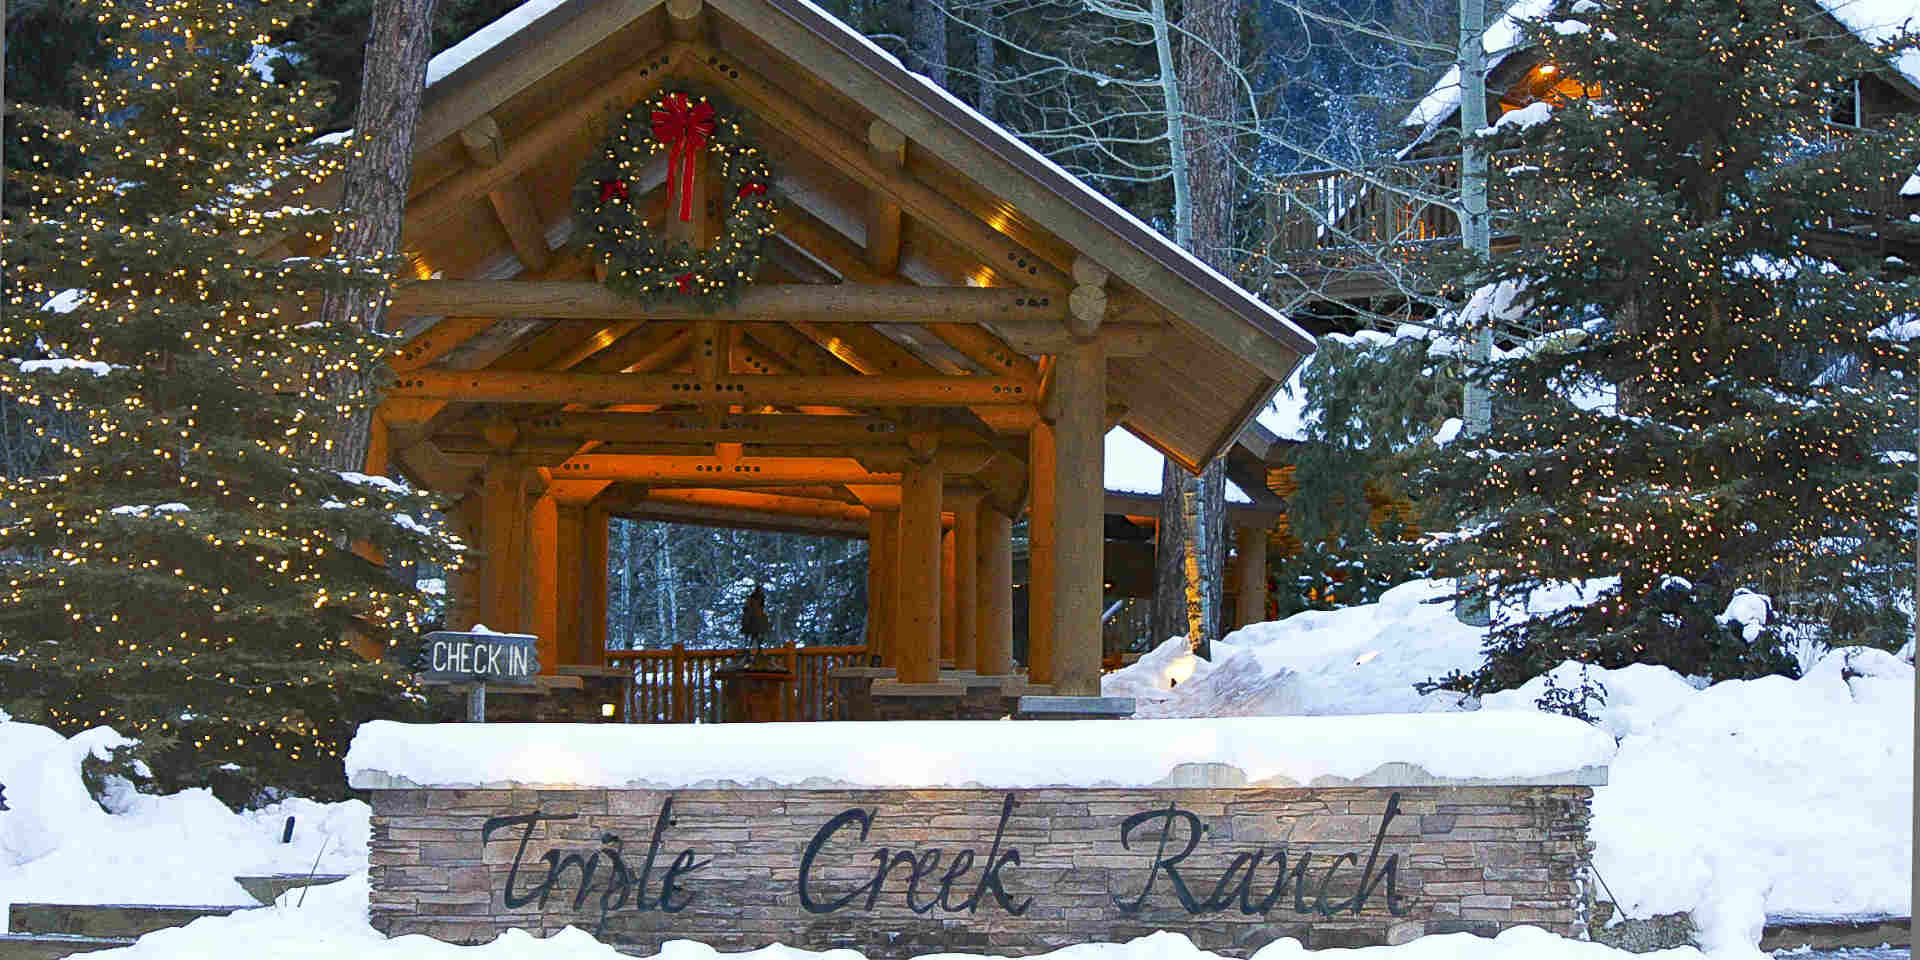 Triple Creek Ranch